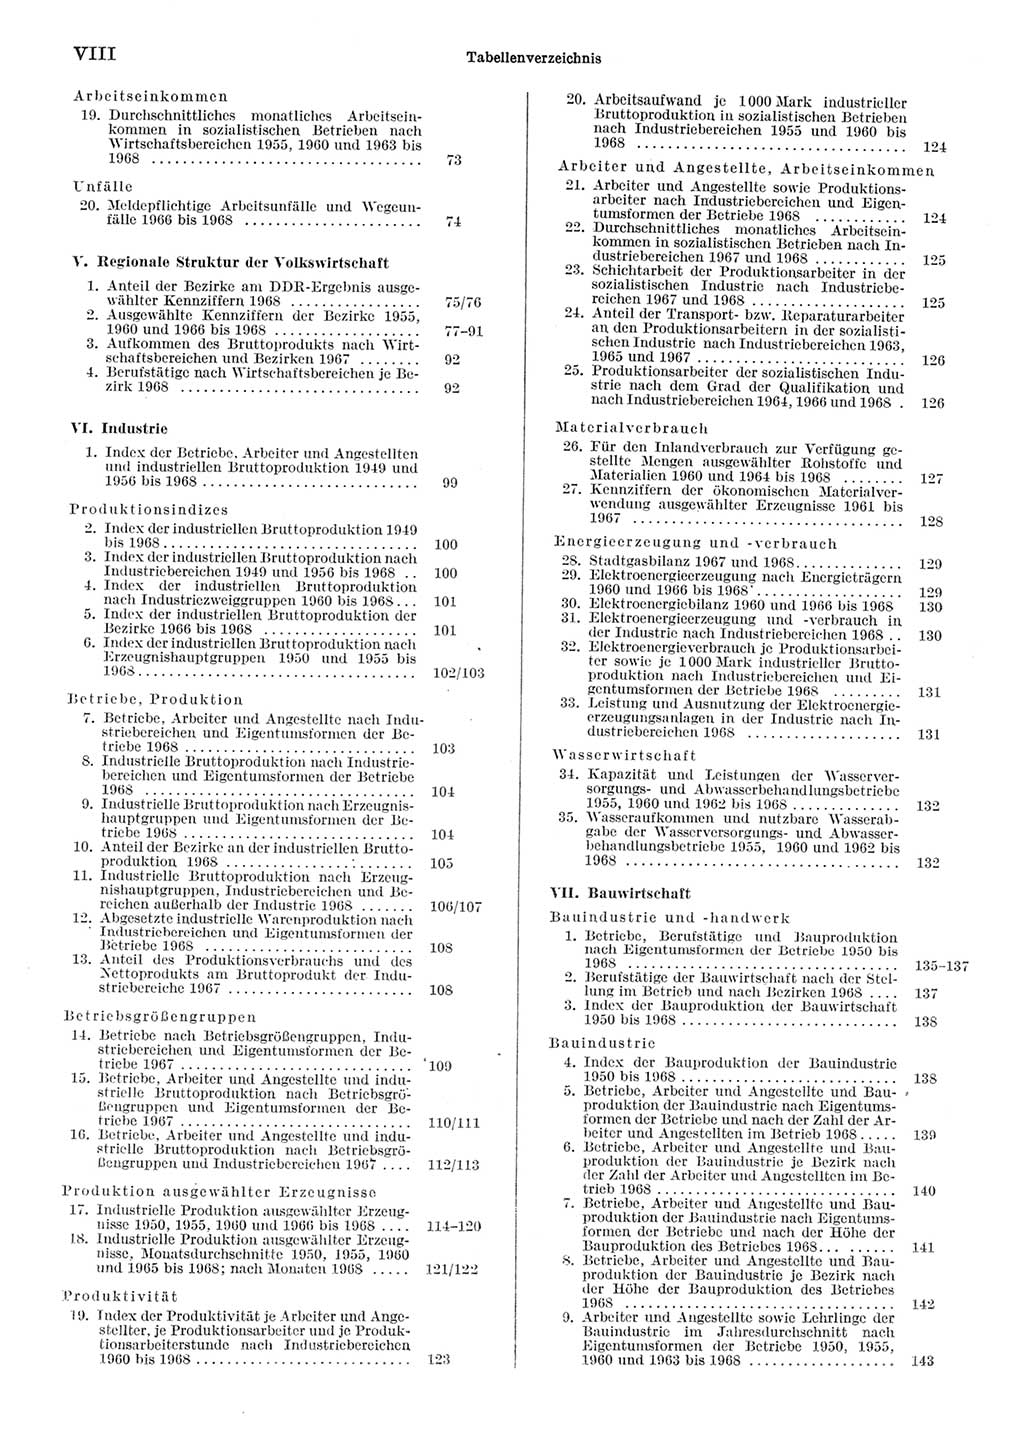 Statistisches Jahrbuch der Deutschen Demokratischen Republik (DDR) 1969, Seite 8 (Stat. Jb. DDR 1969, S. 8)